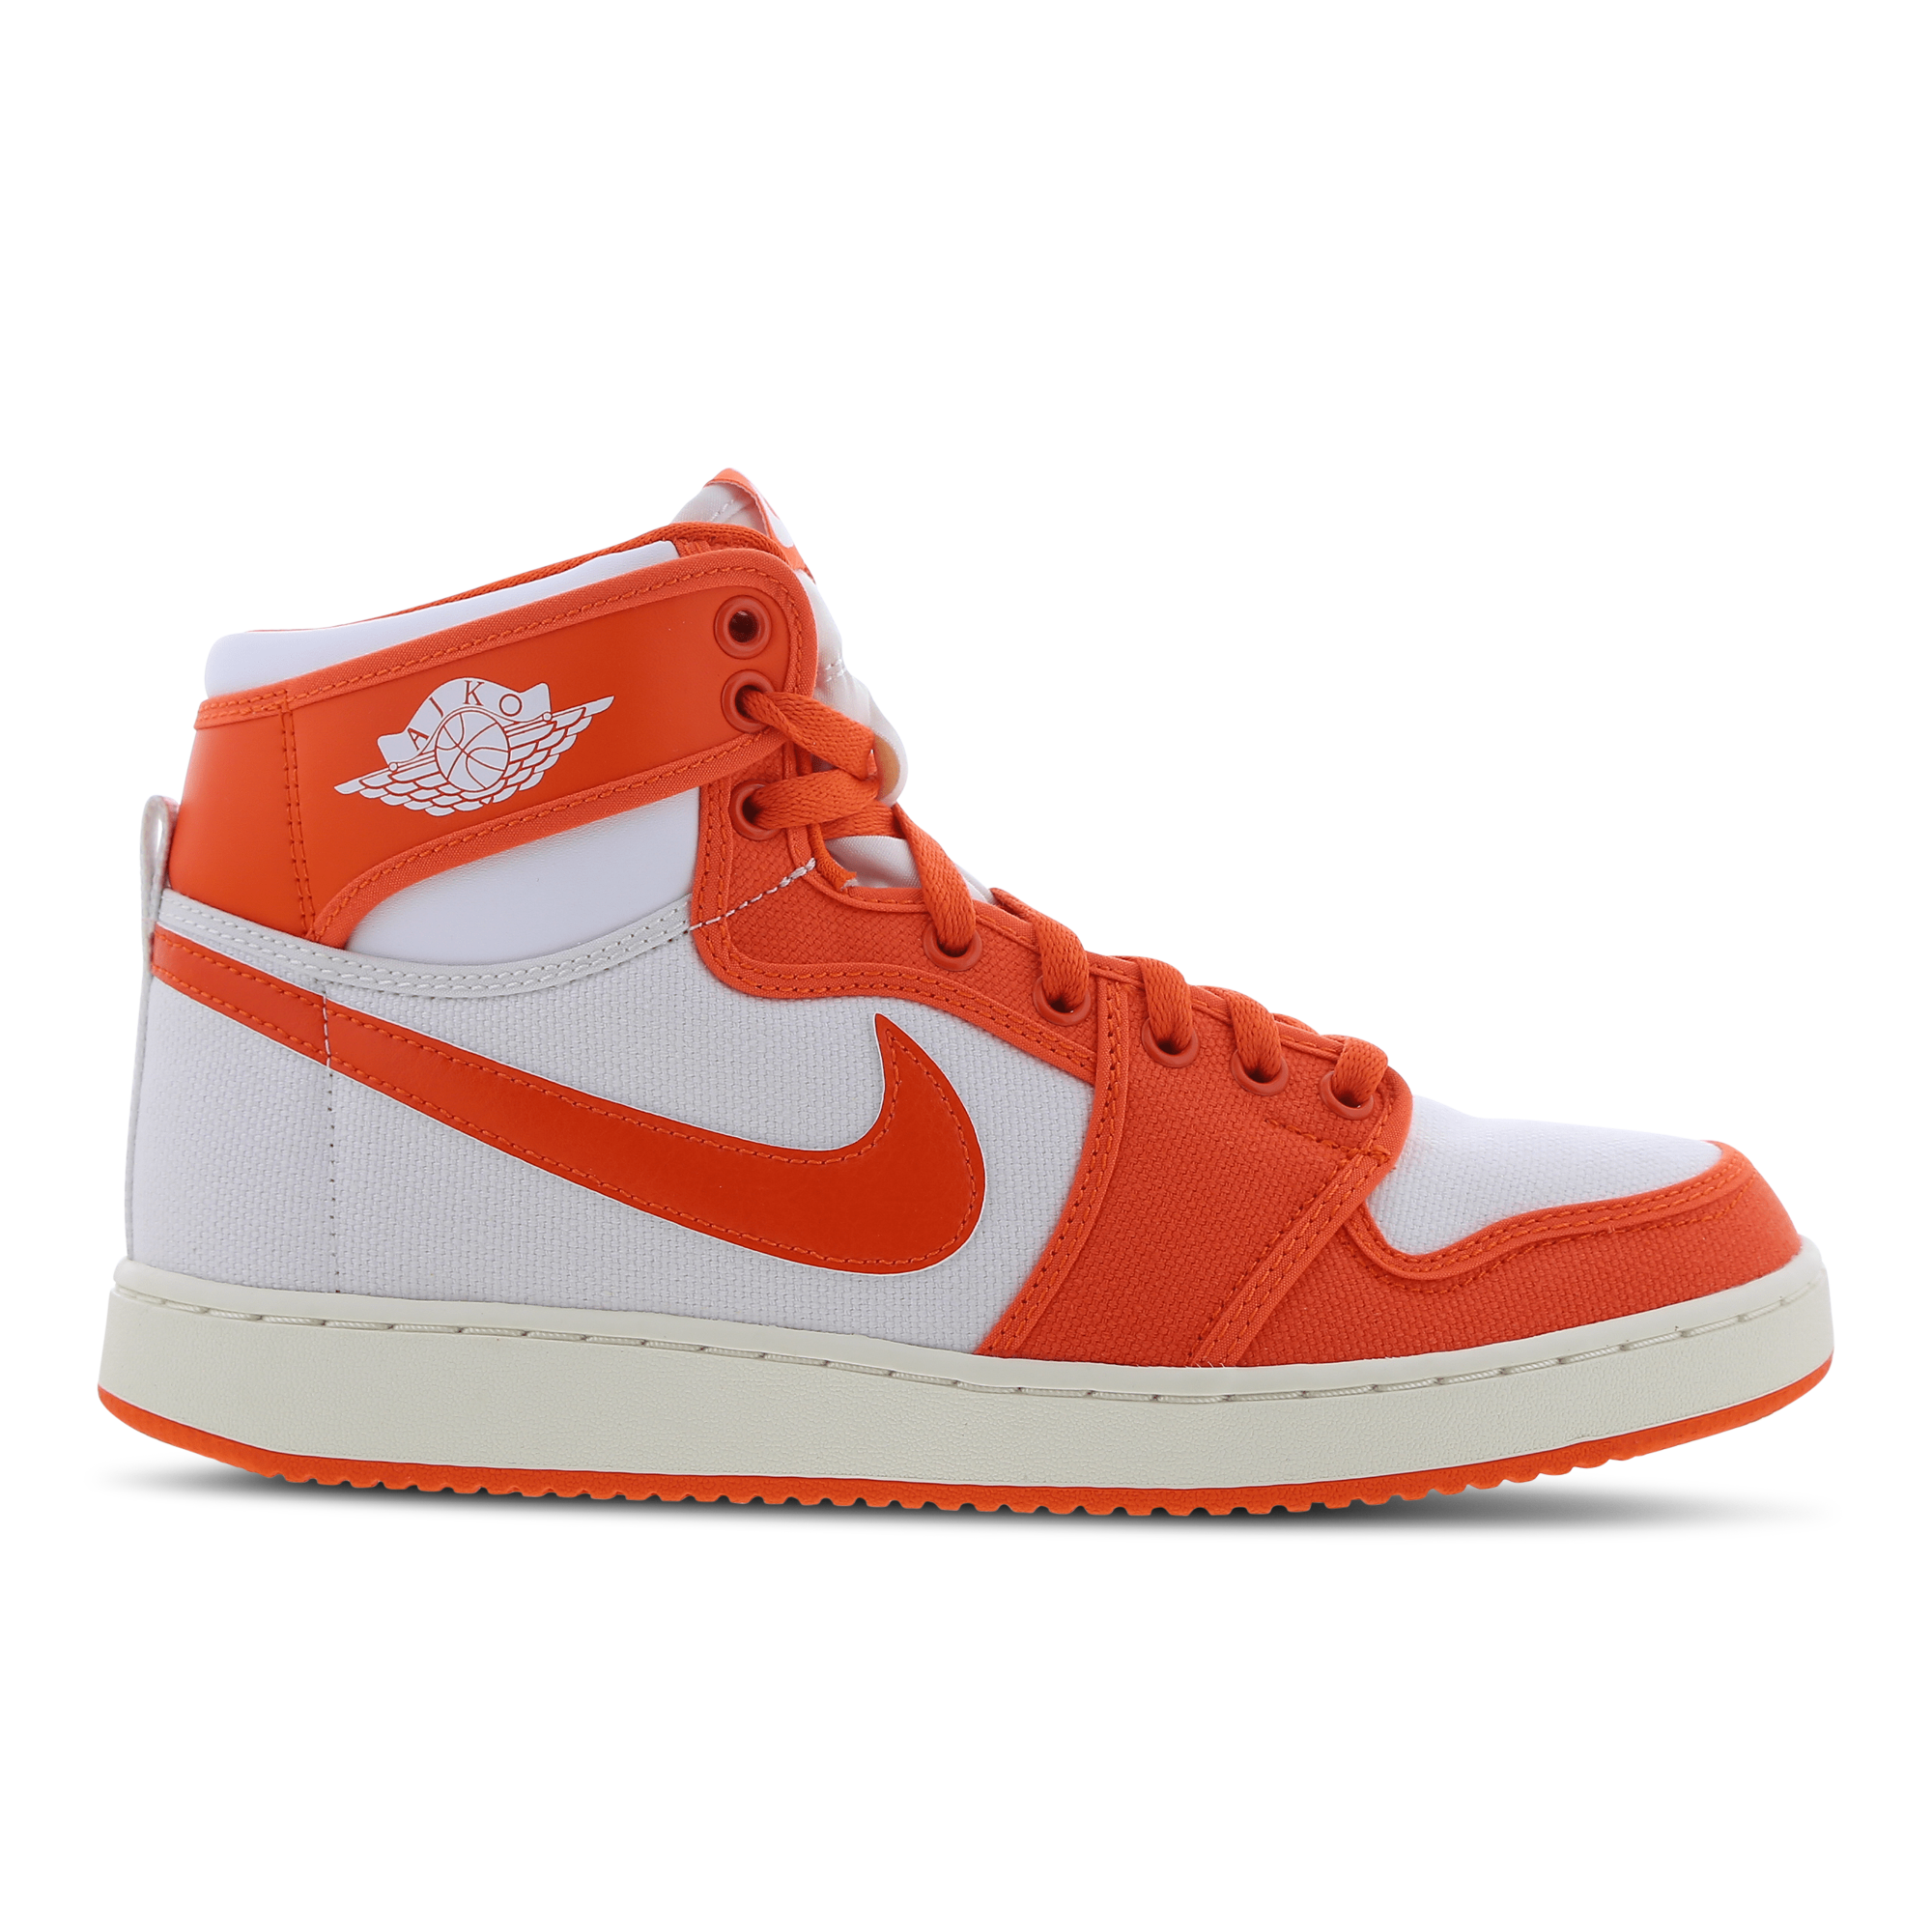 foot locker orange and white jordans